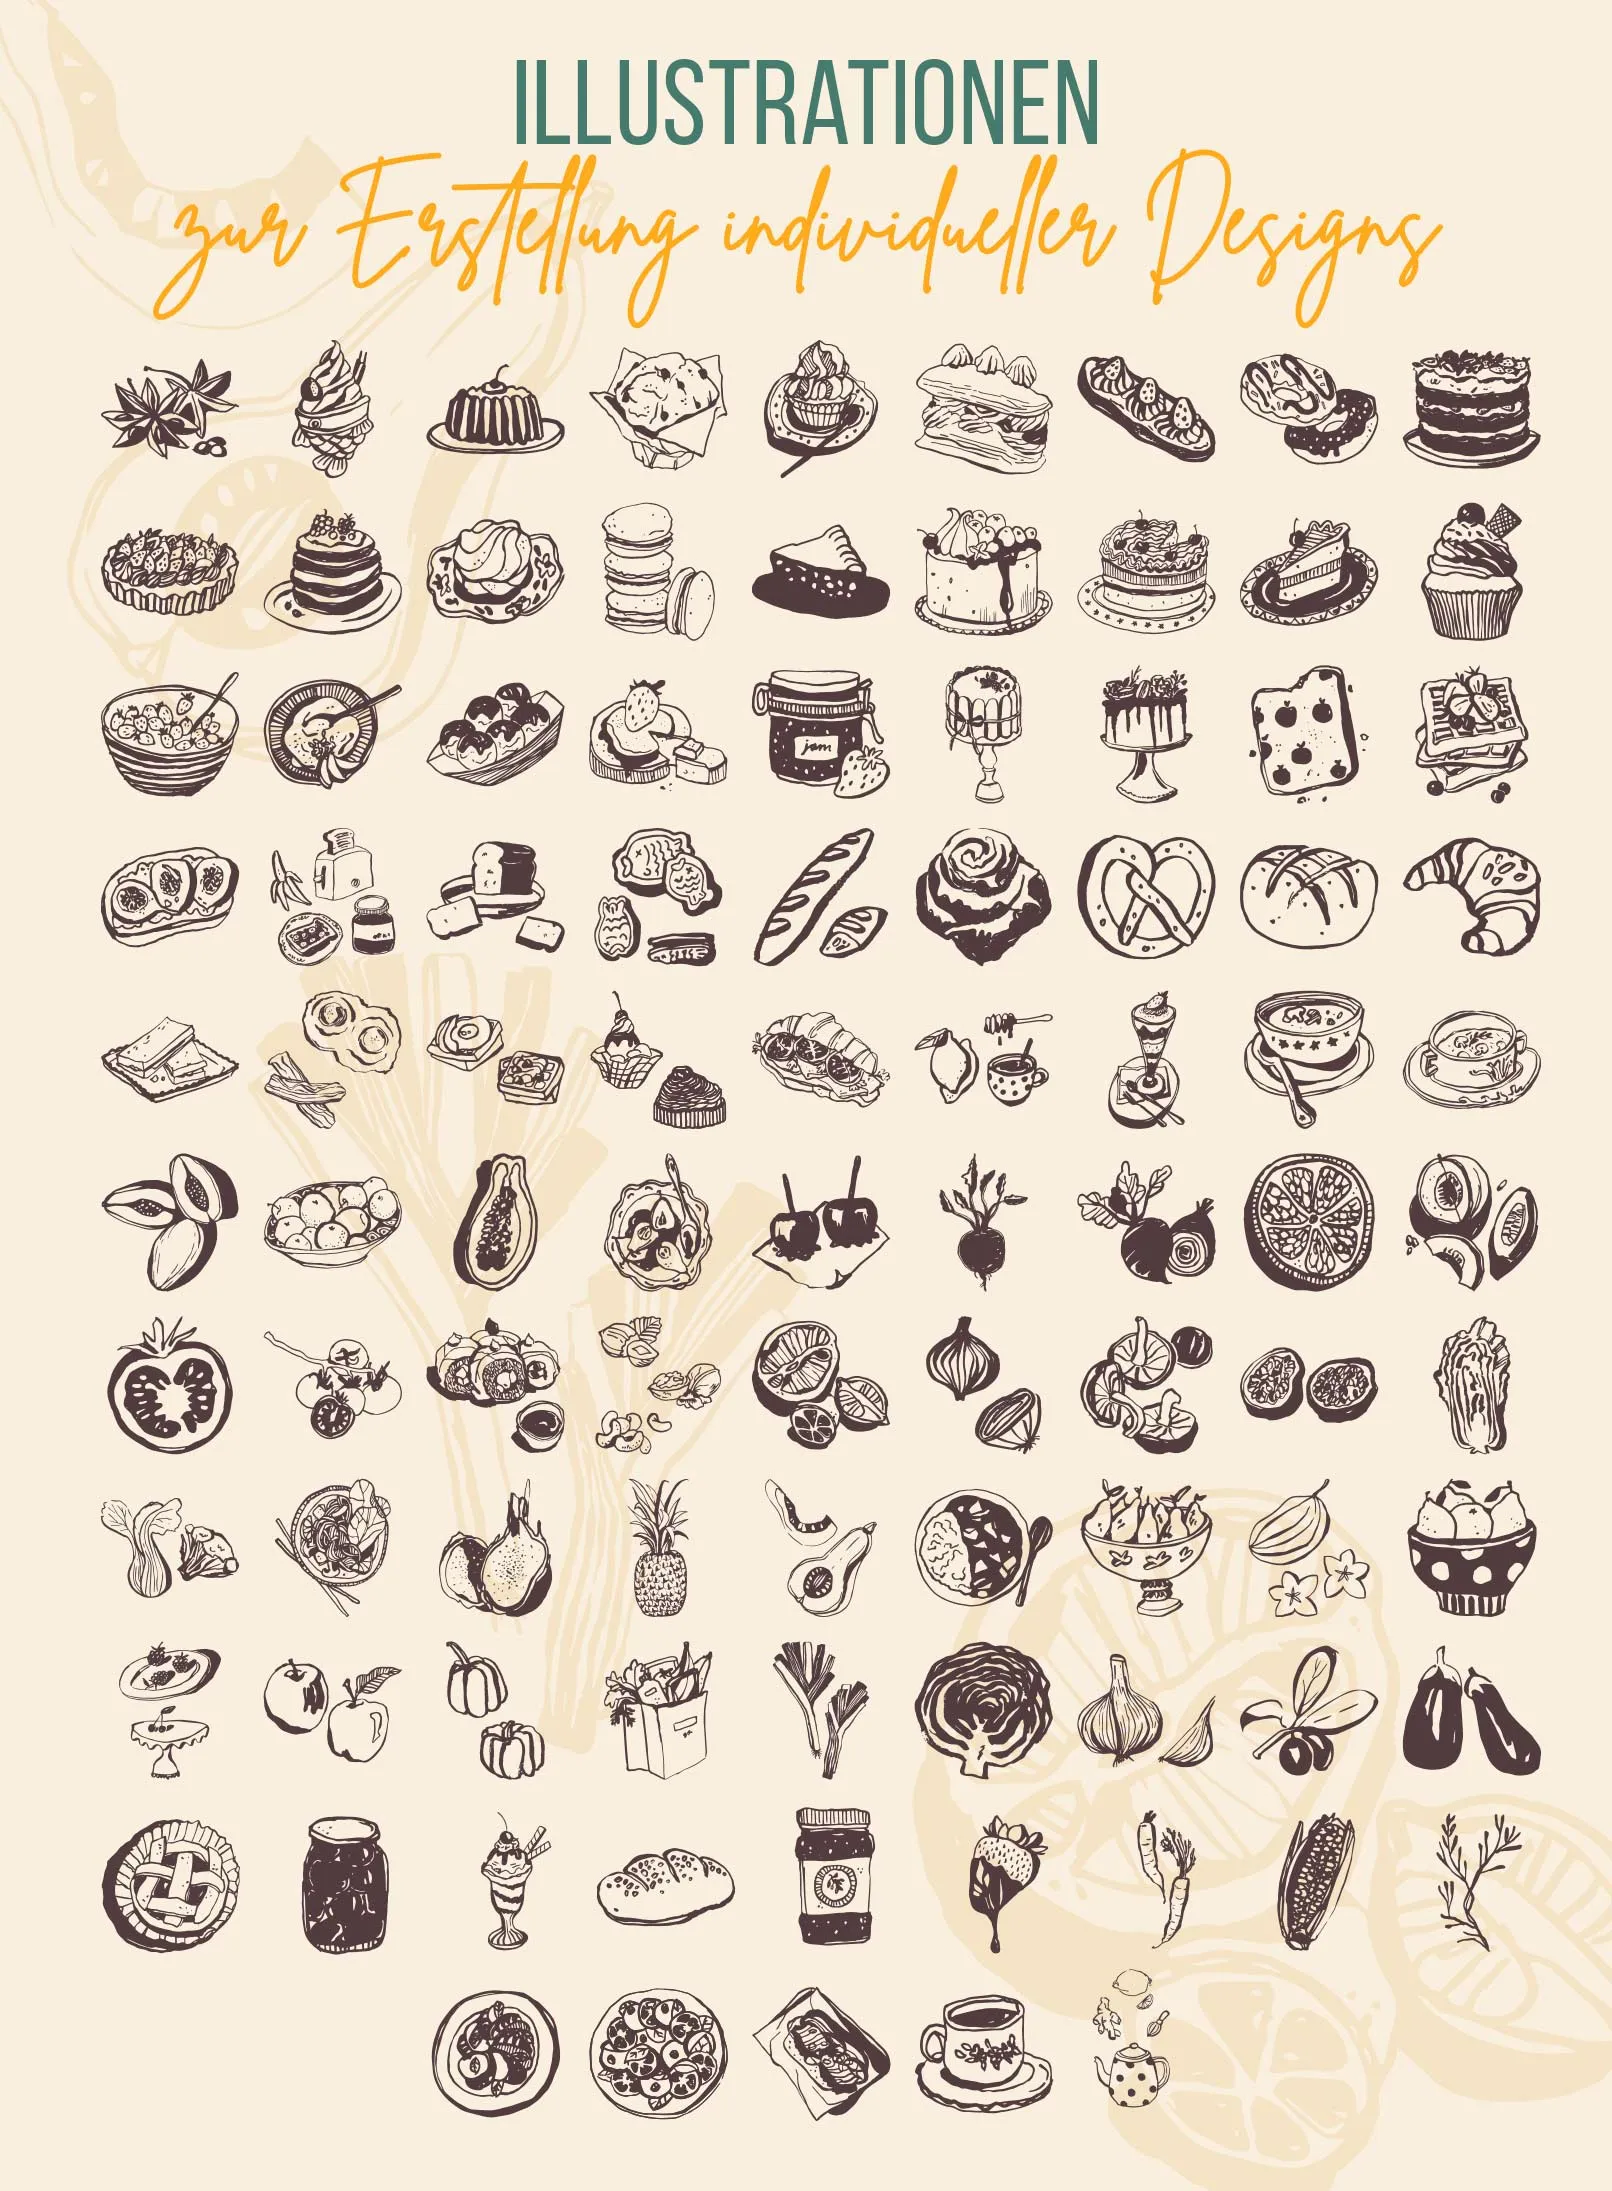 Bilder und Illustrationen mit Essen und Getränken für Restaurants, Bars, Cafés